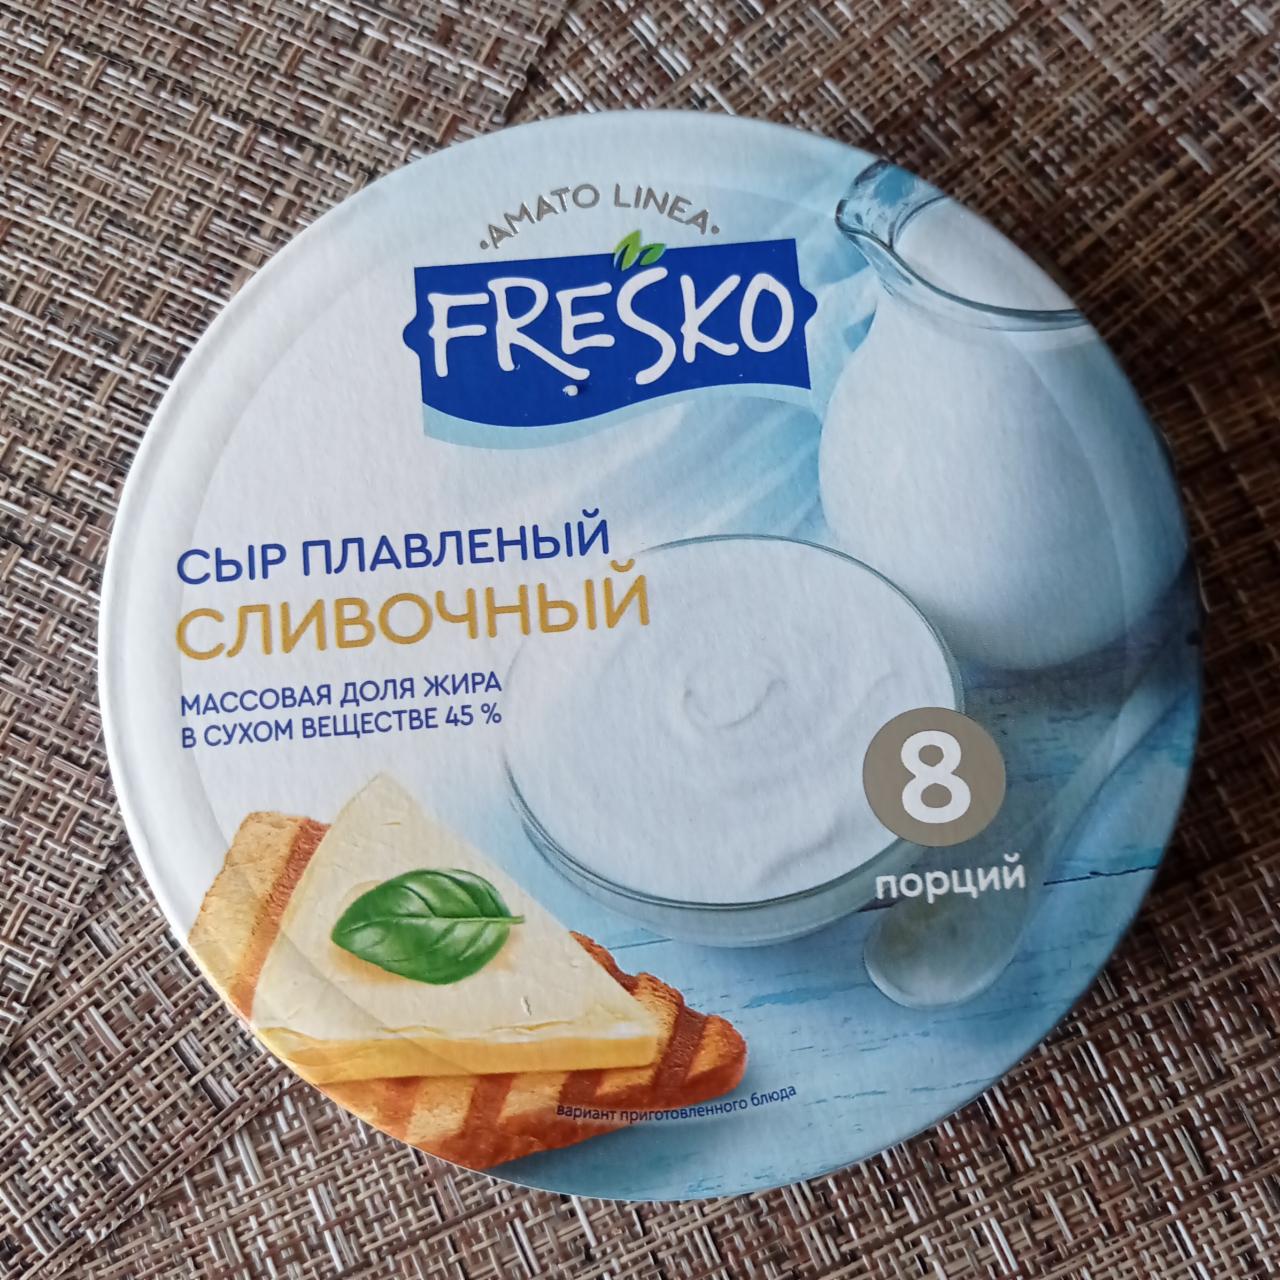 Фото - Сыр плавленый сливочный 8 порций Fresko